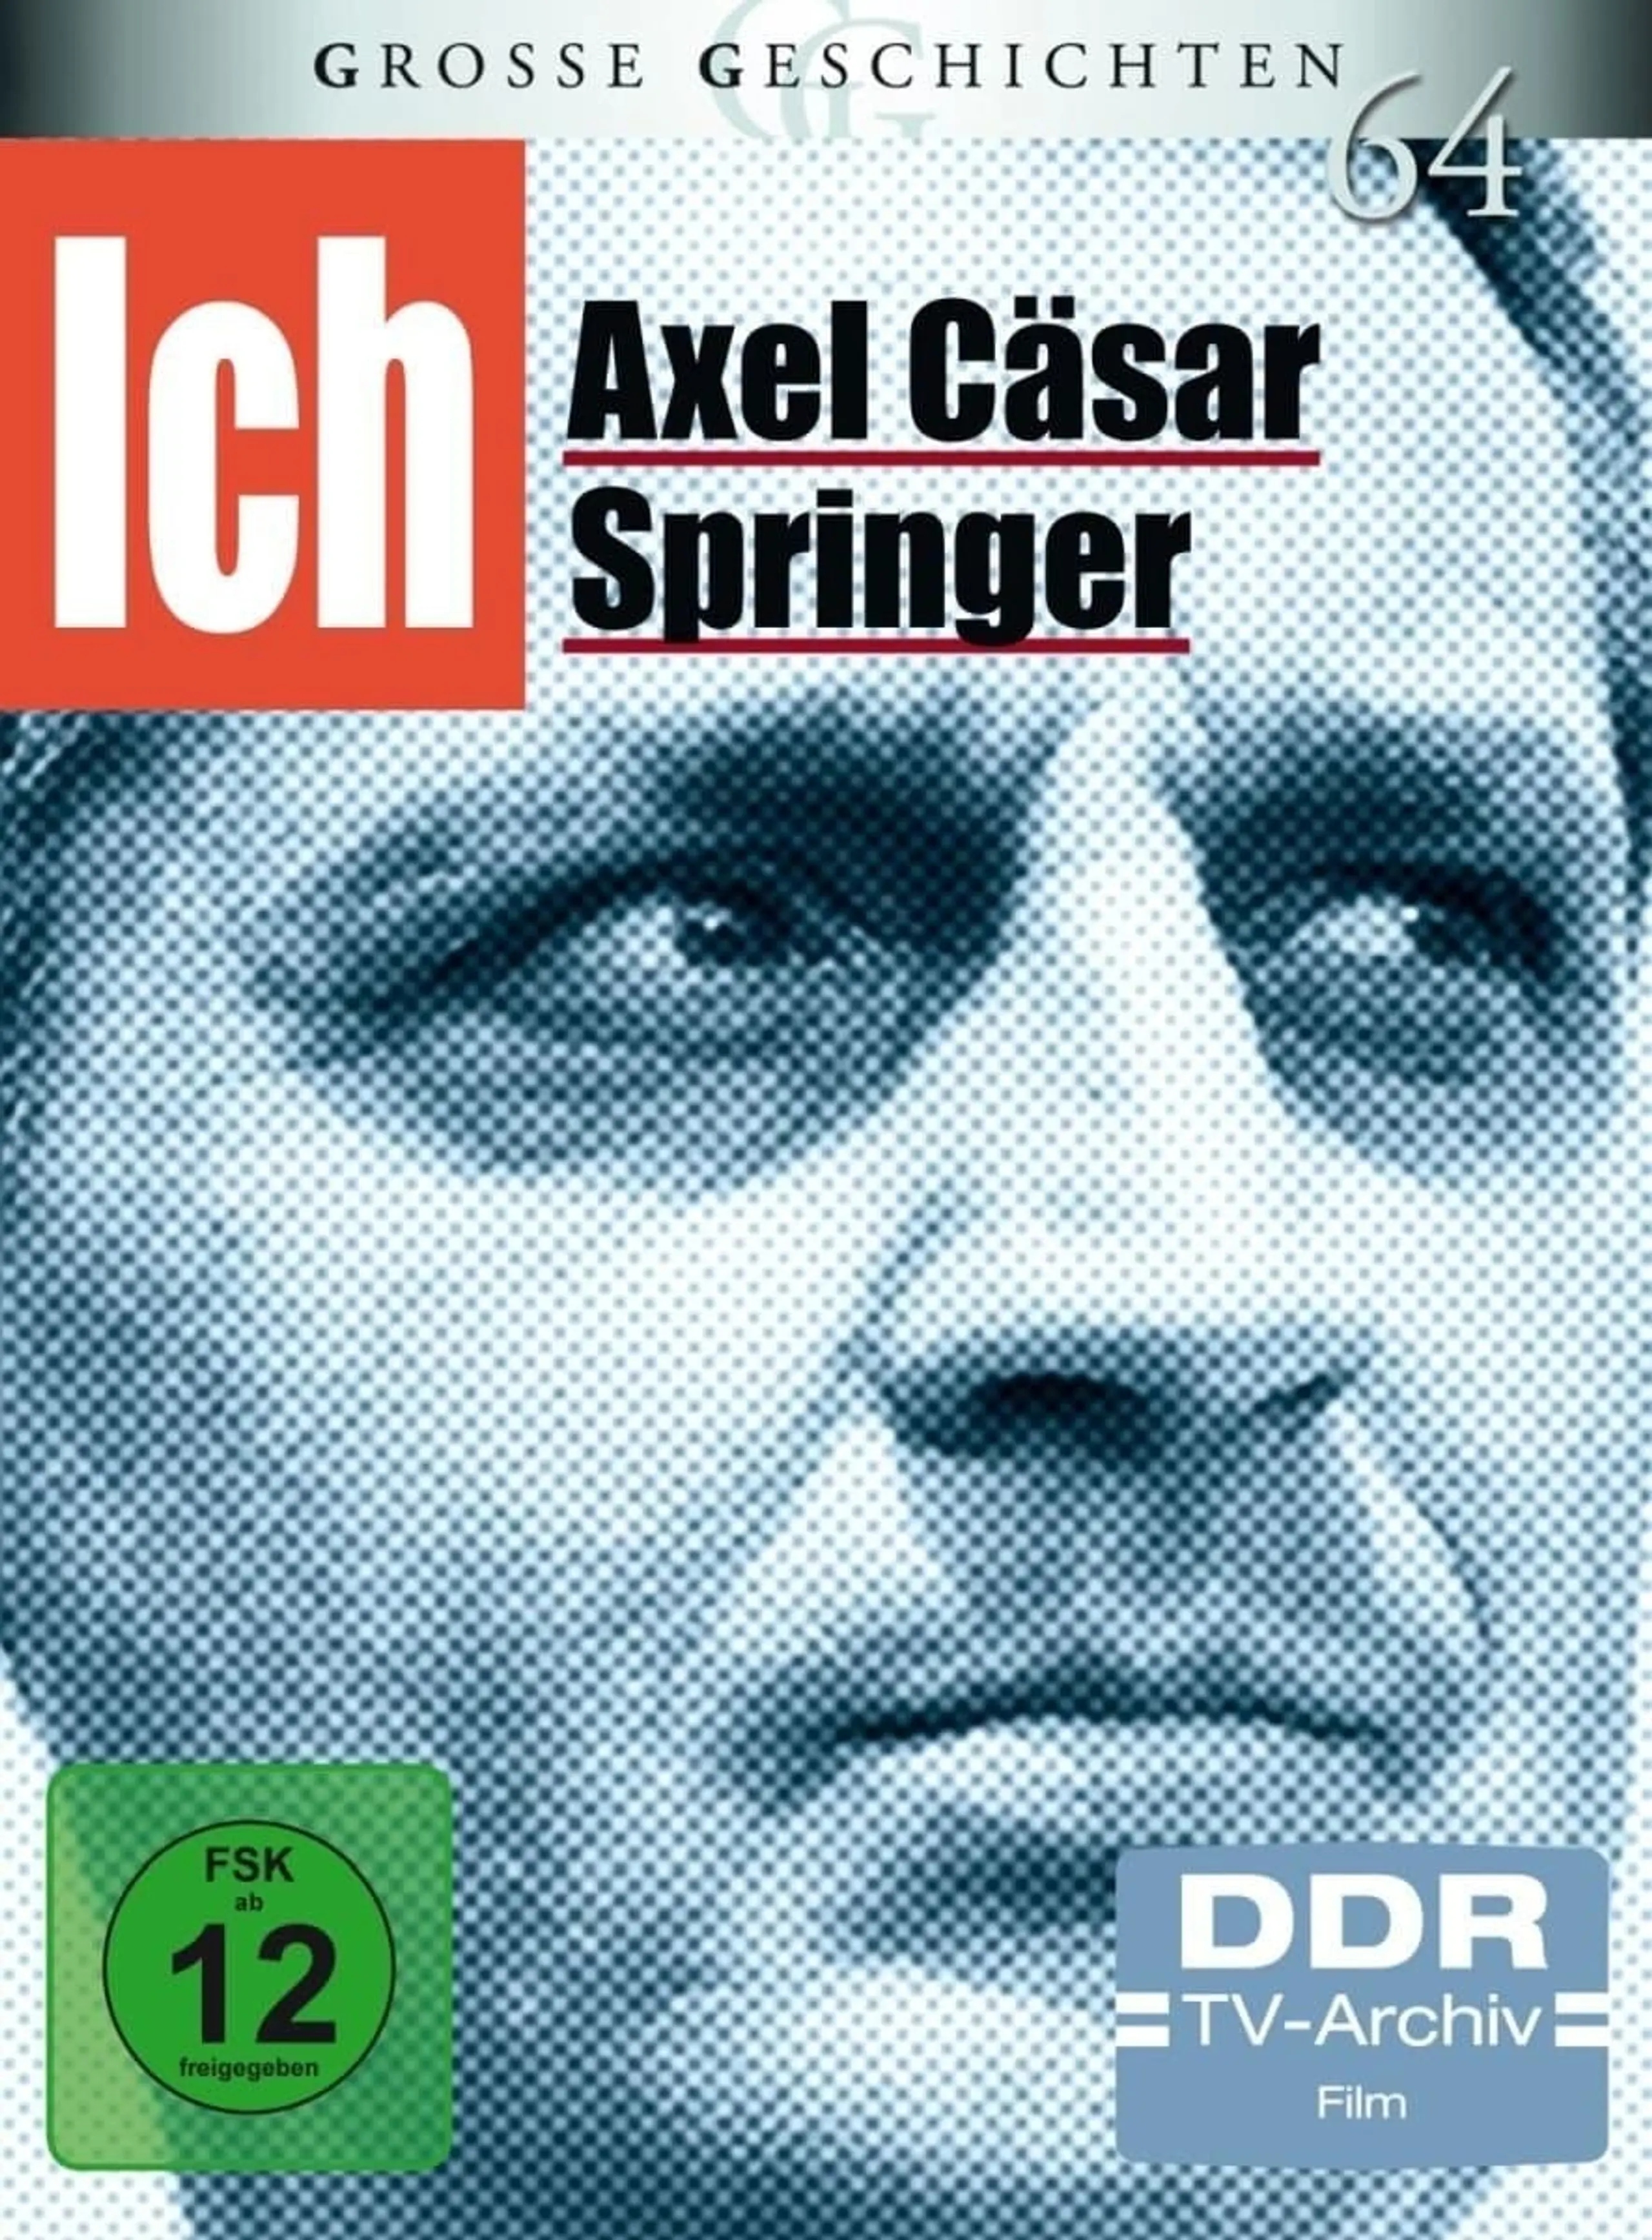 Ich-Axel Cäsar Springer